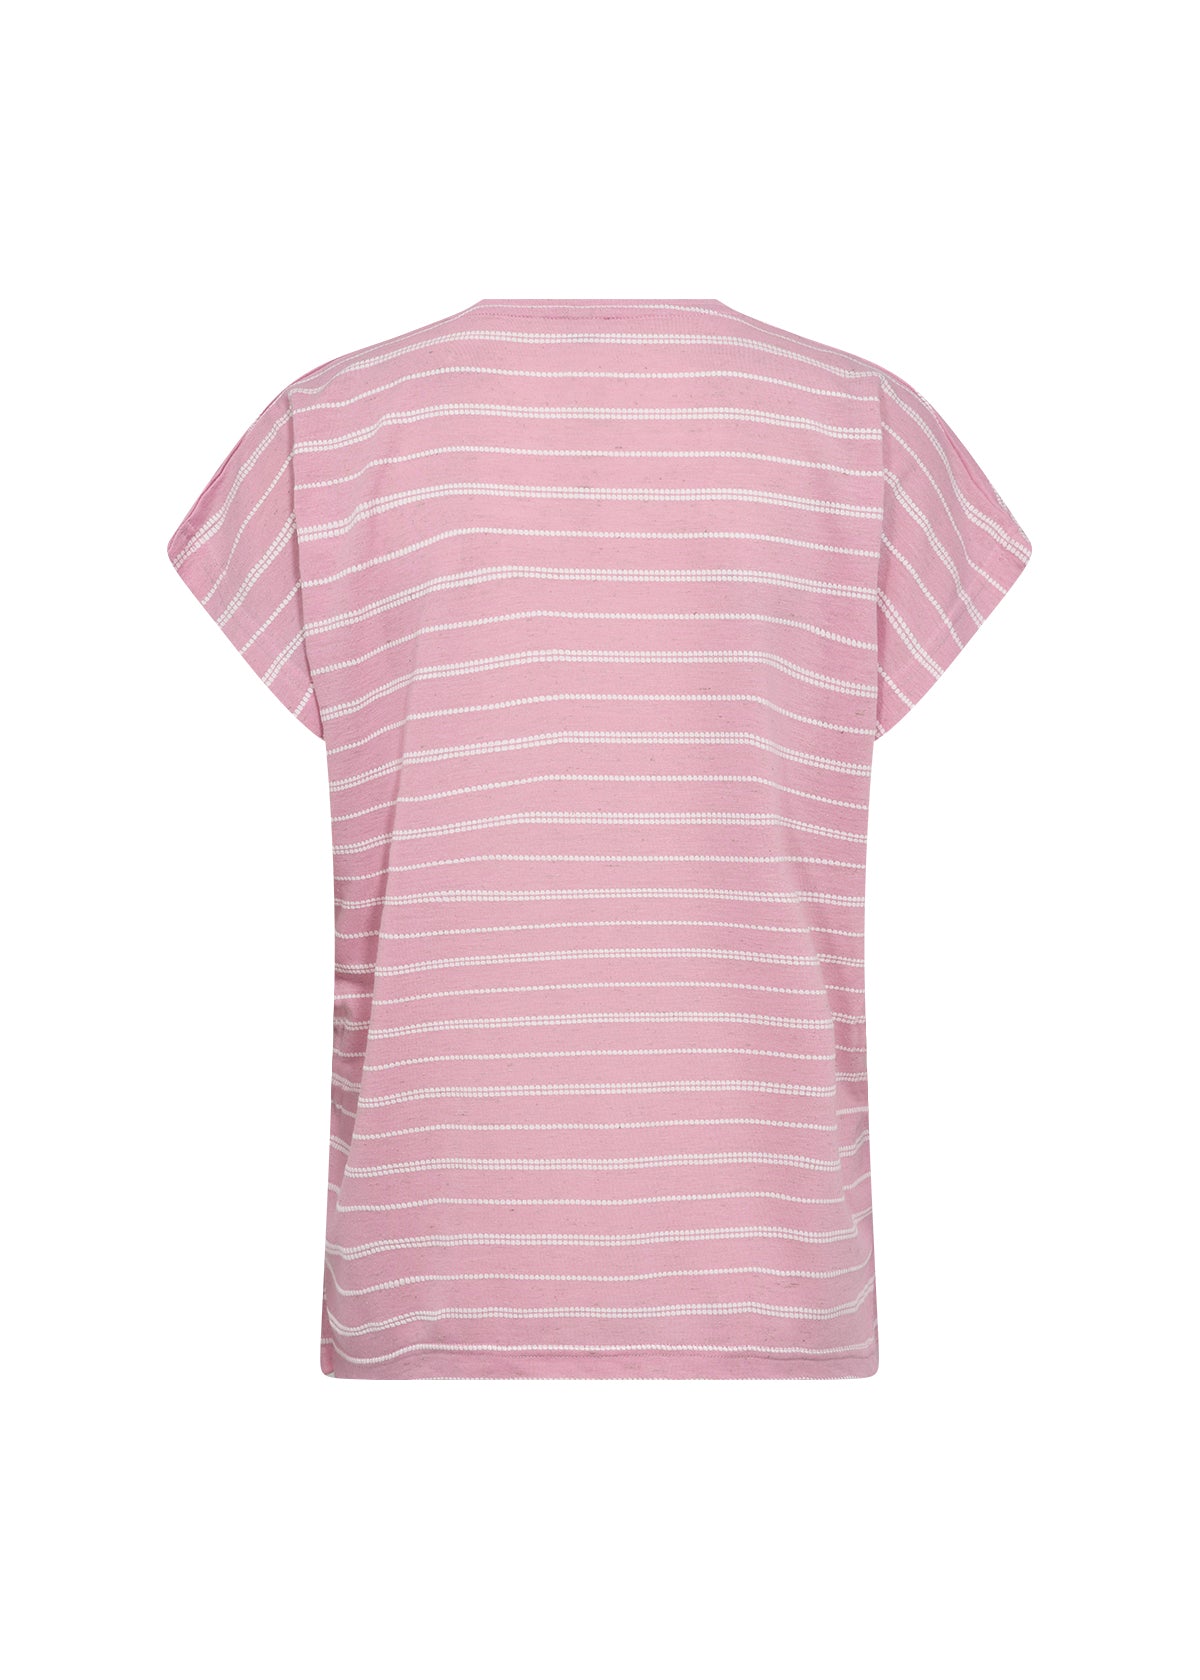 Defne T-Shirt in Pink